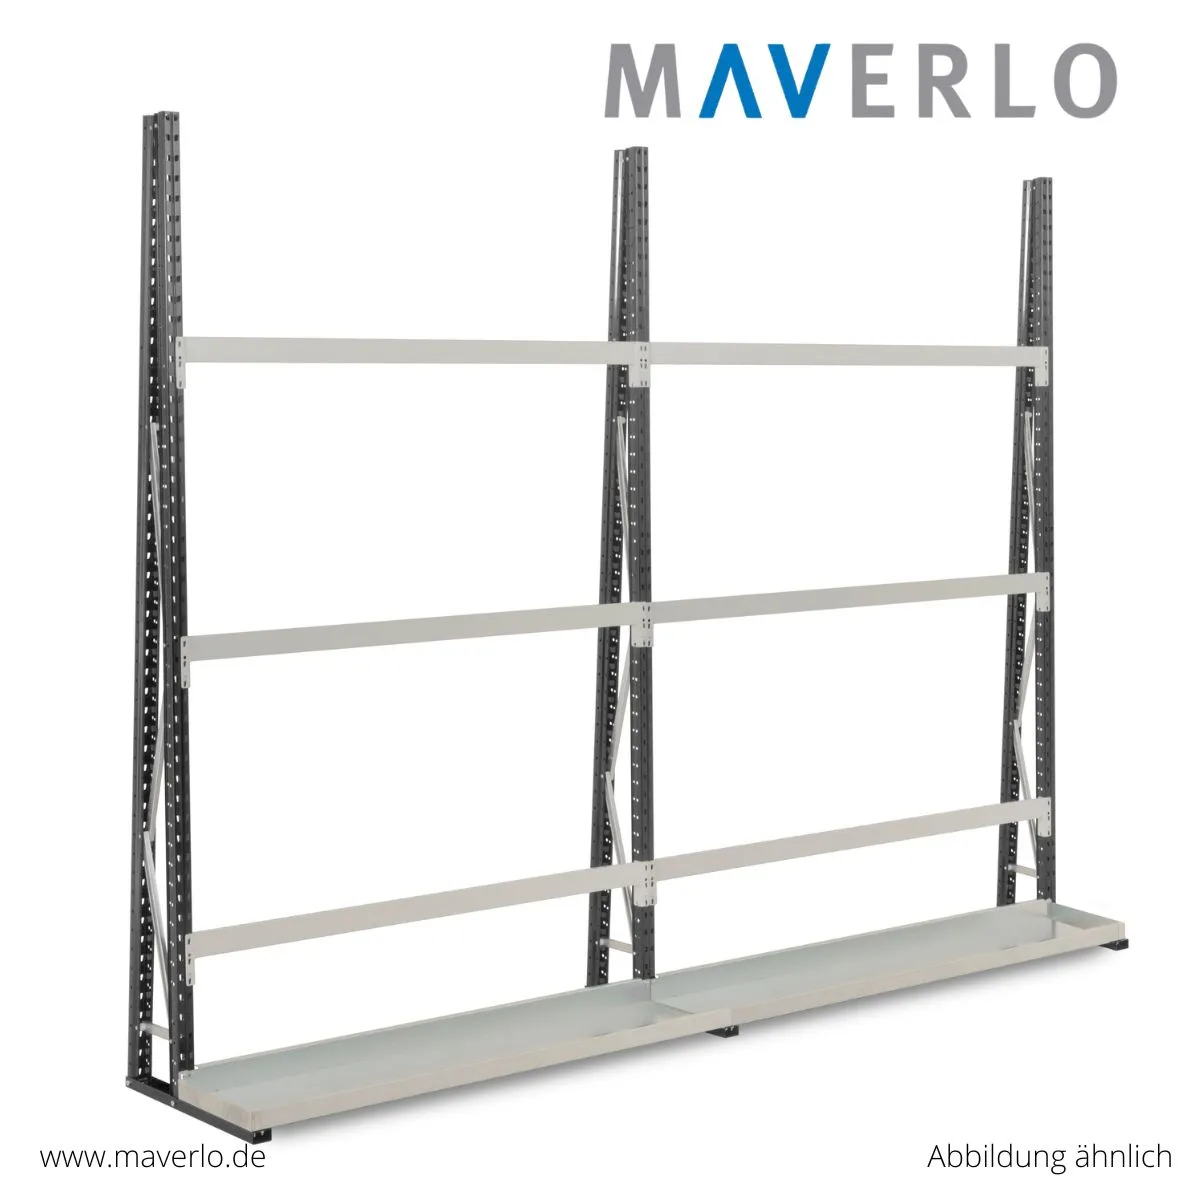 Platzsparendes und flexibles Vertikalregal für kleine Räume - ideal für die Lagerung von Gegenständen verschiedener Größe